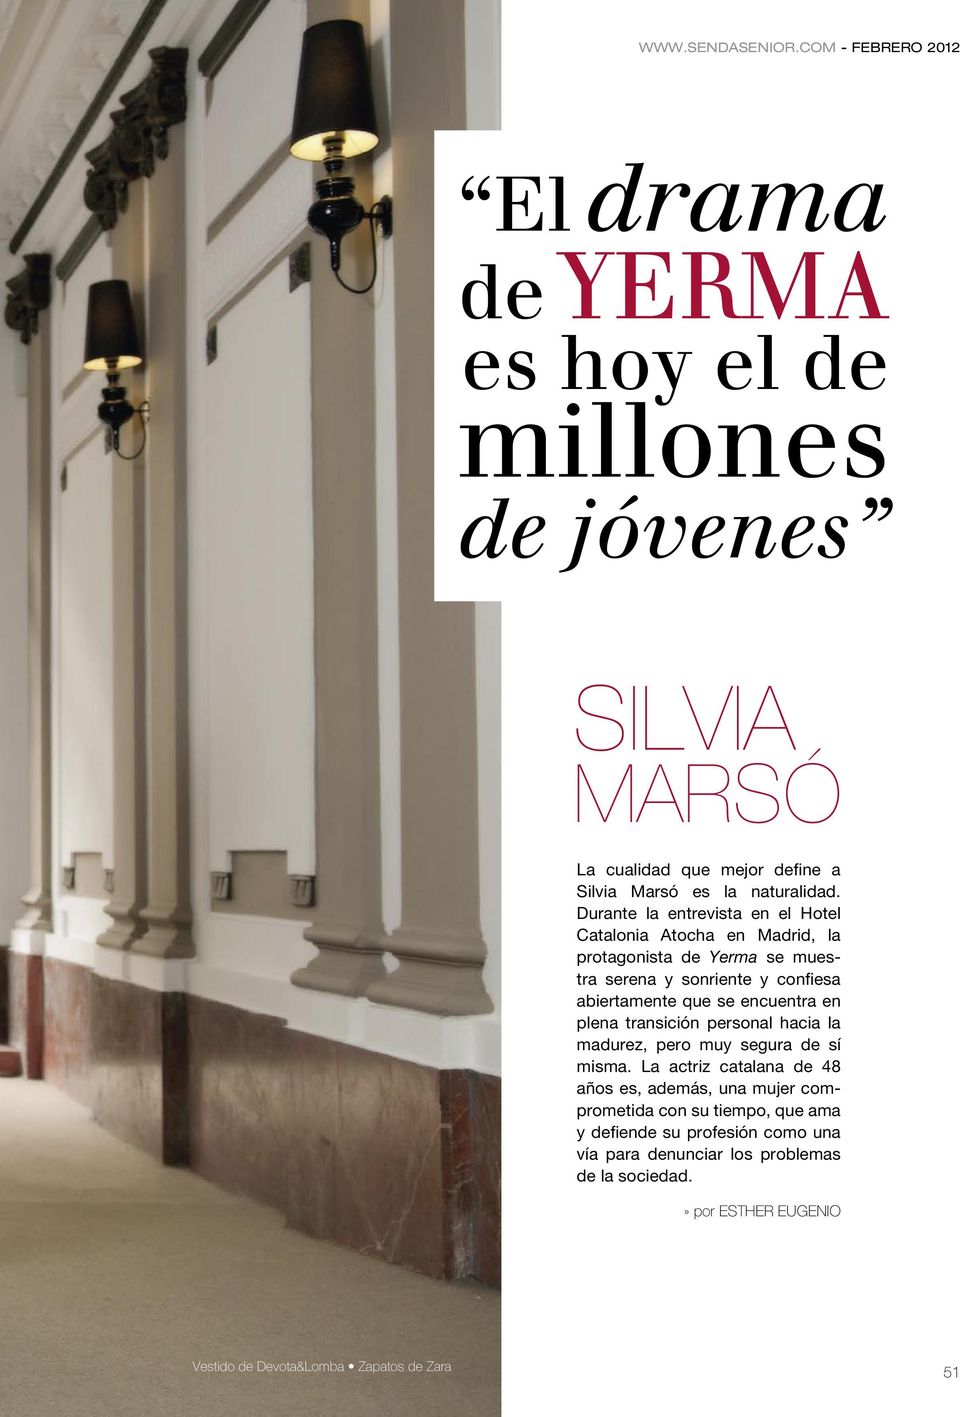 Durante la entrevista en el Hotel Catalonia Atocha en Madrid, la protagonista de Yerma se muestra serena y sonriente y confiesa abiertamente que se